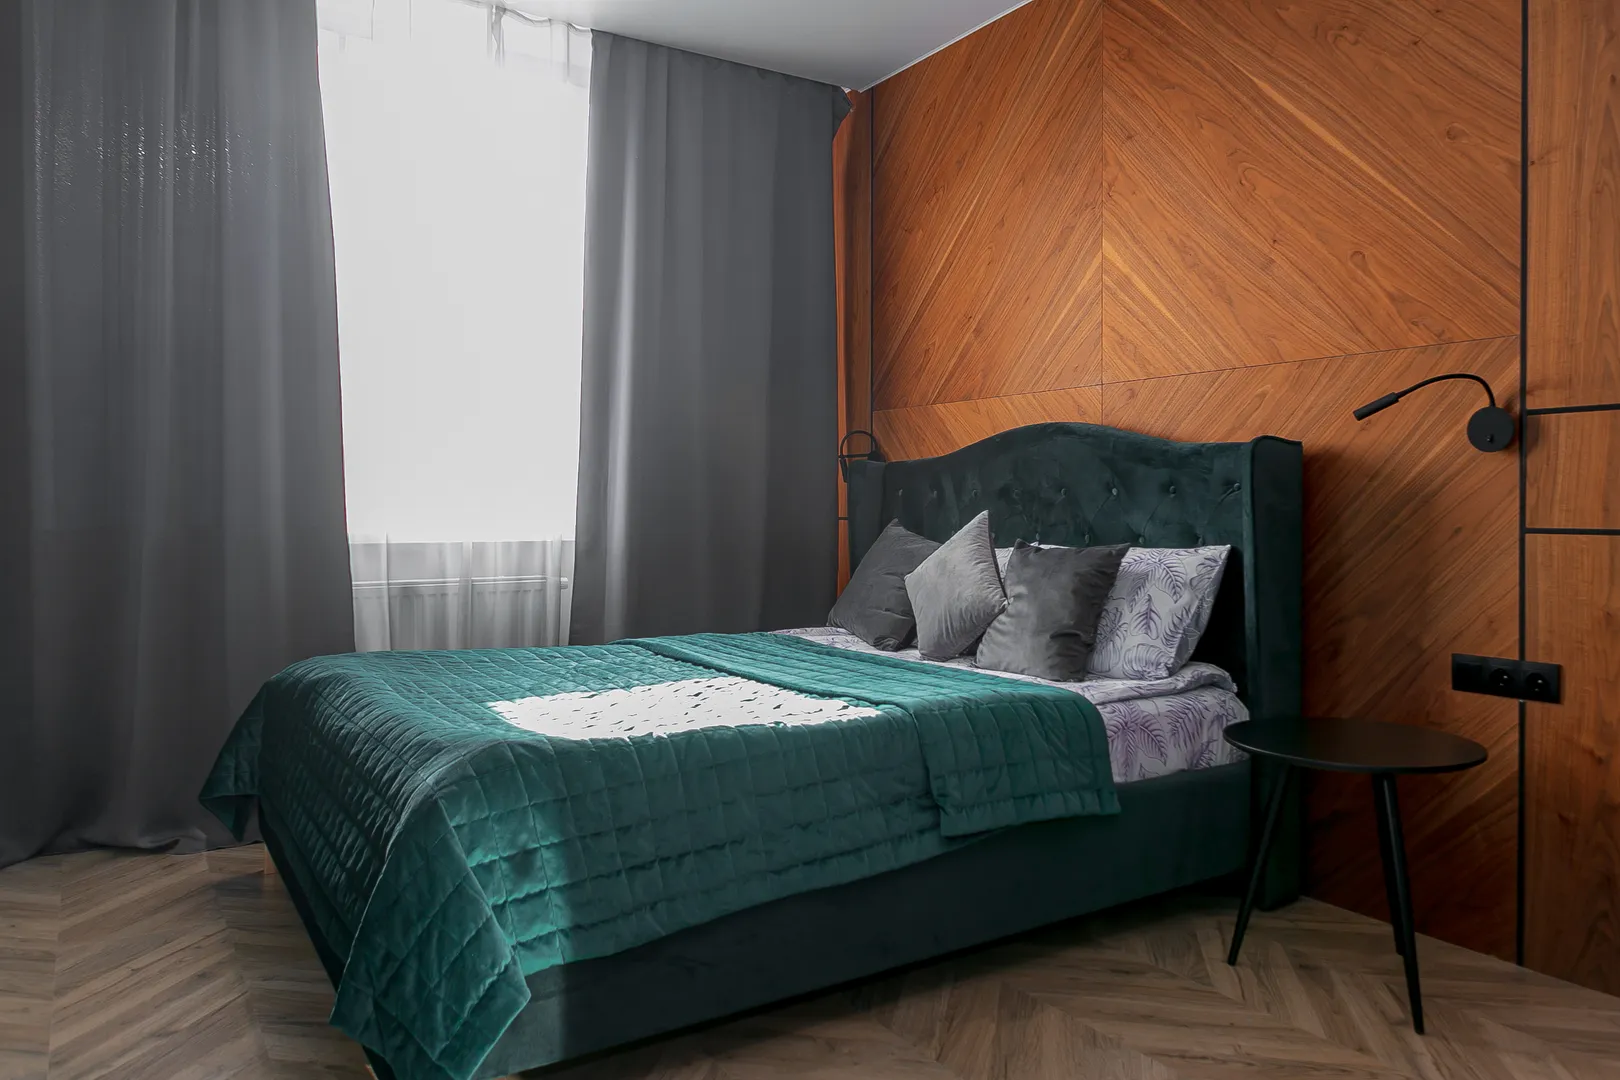 Двуспальная king-size кровать с прикроватным столиком и бра по обе стороны